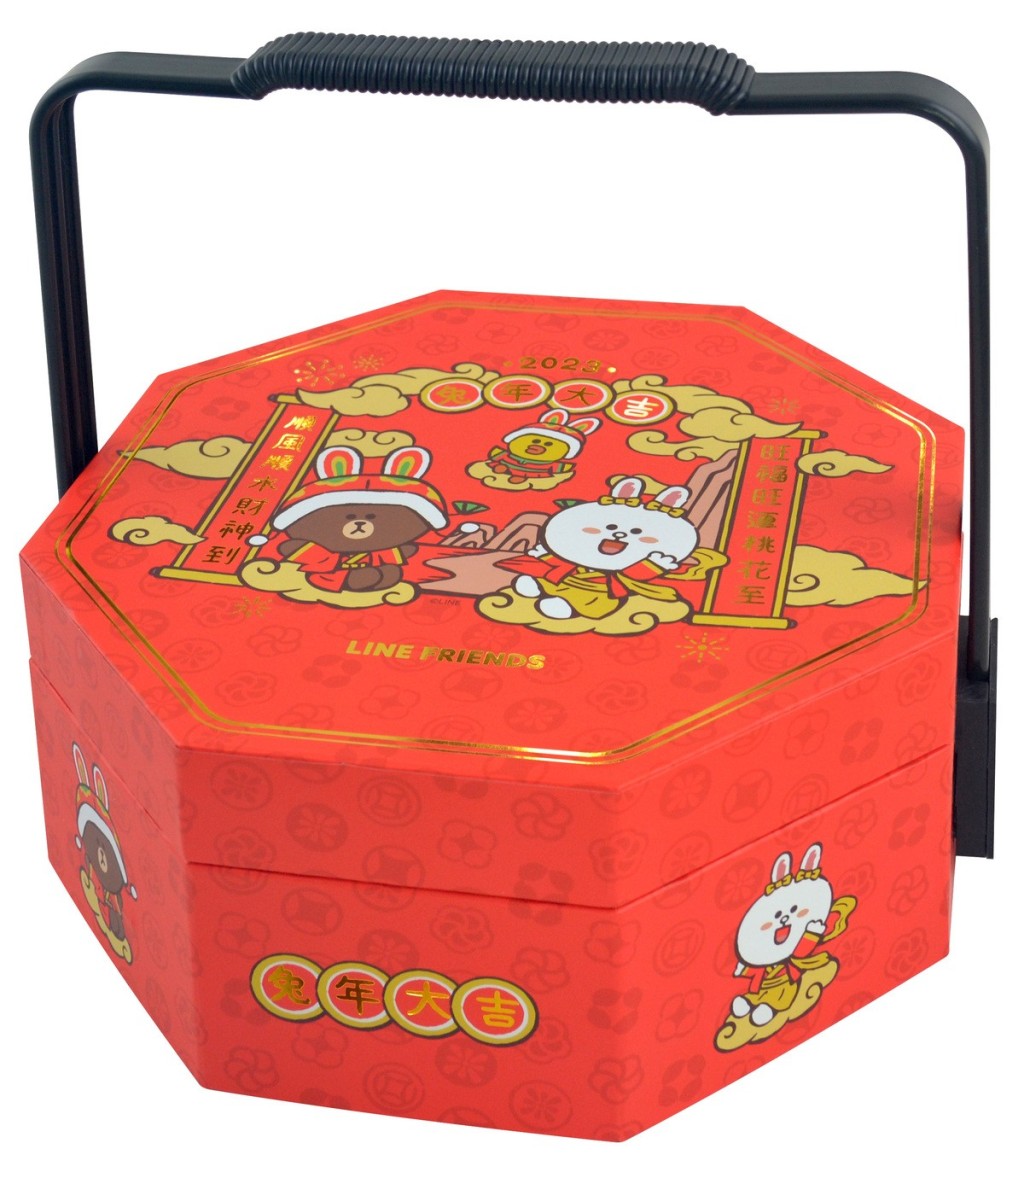 惠康獨家的Line Friends全盒設計的中式餅禮盒 /原價$80、優惠價$58，包括原味蛋卷 、蝴蝶酥及千層酥。